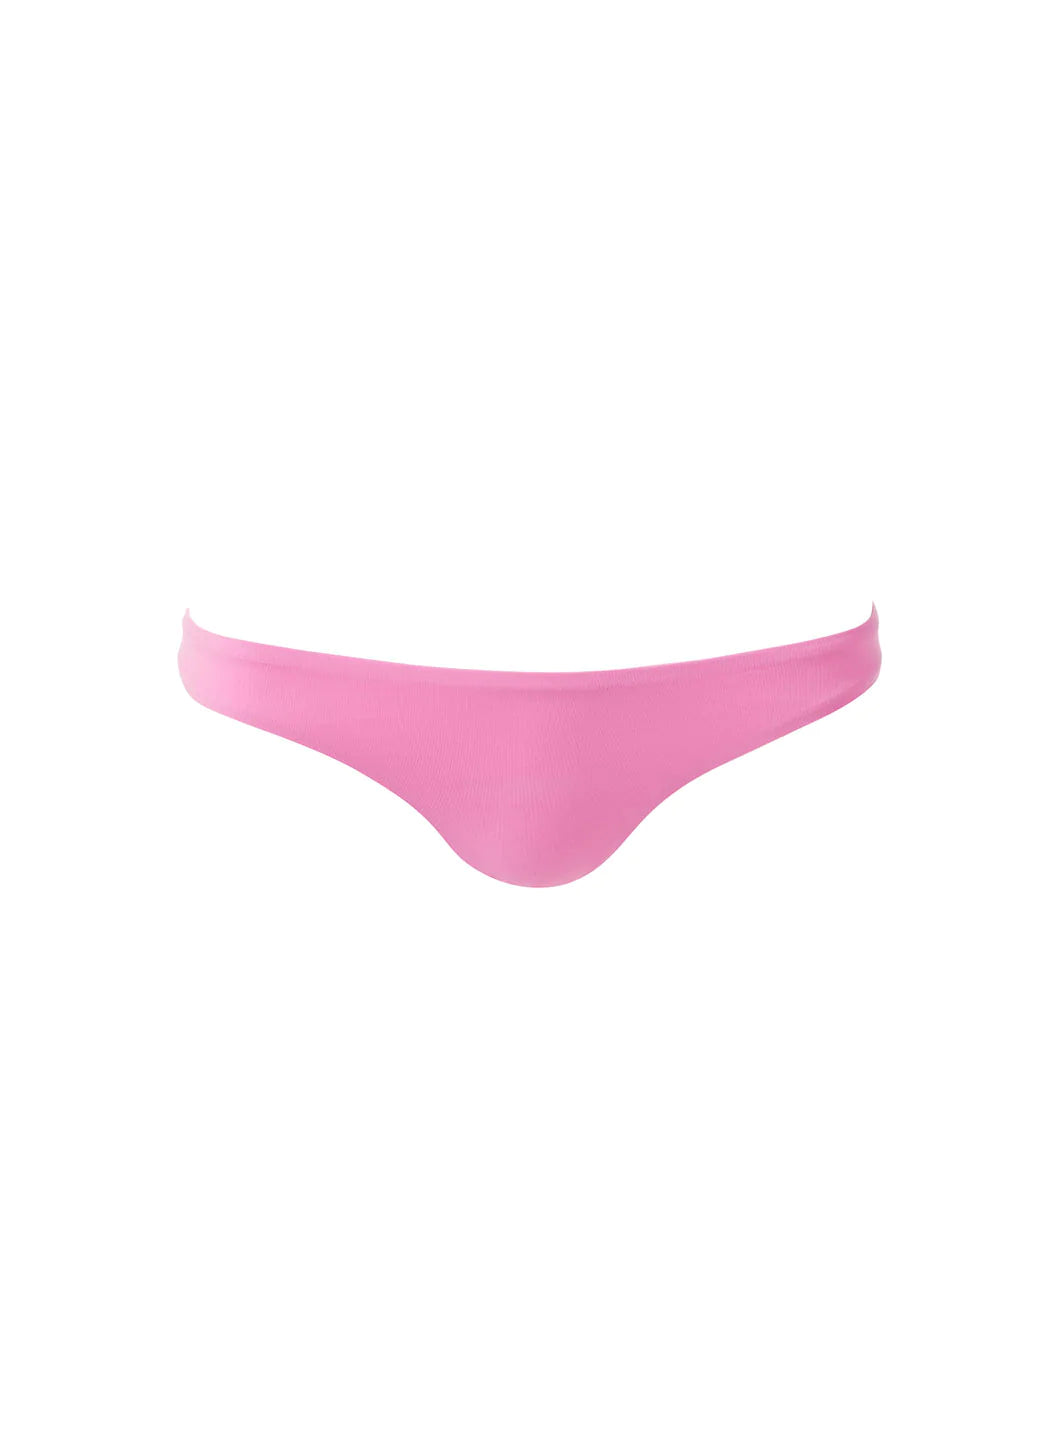 Barbados Pink Bikini Bottom